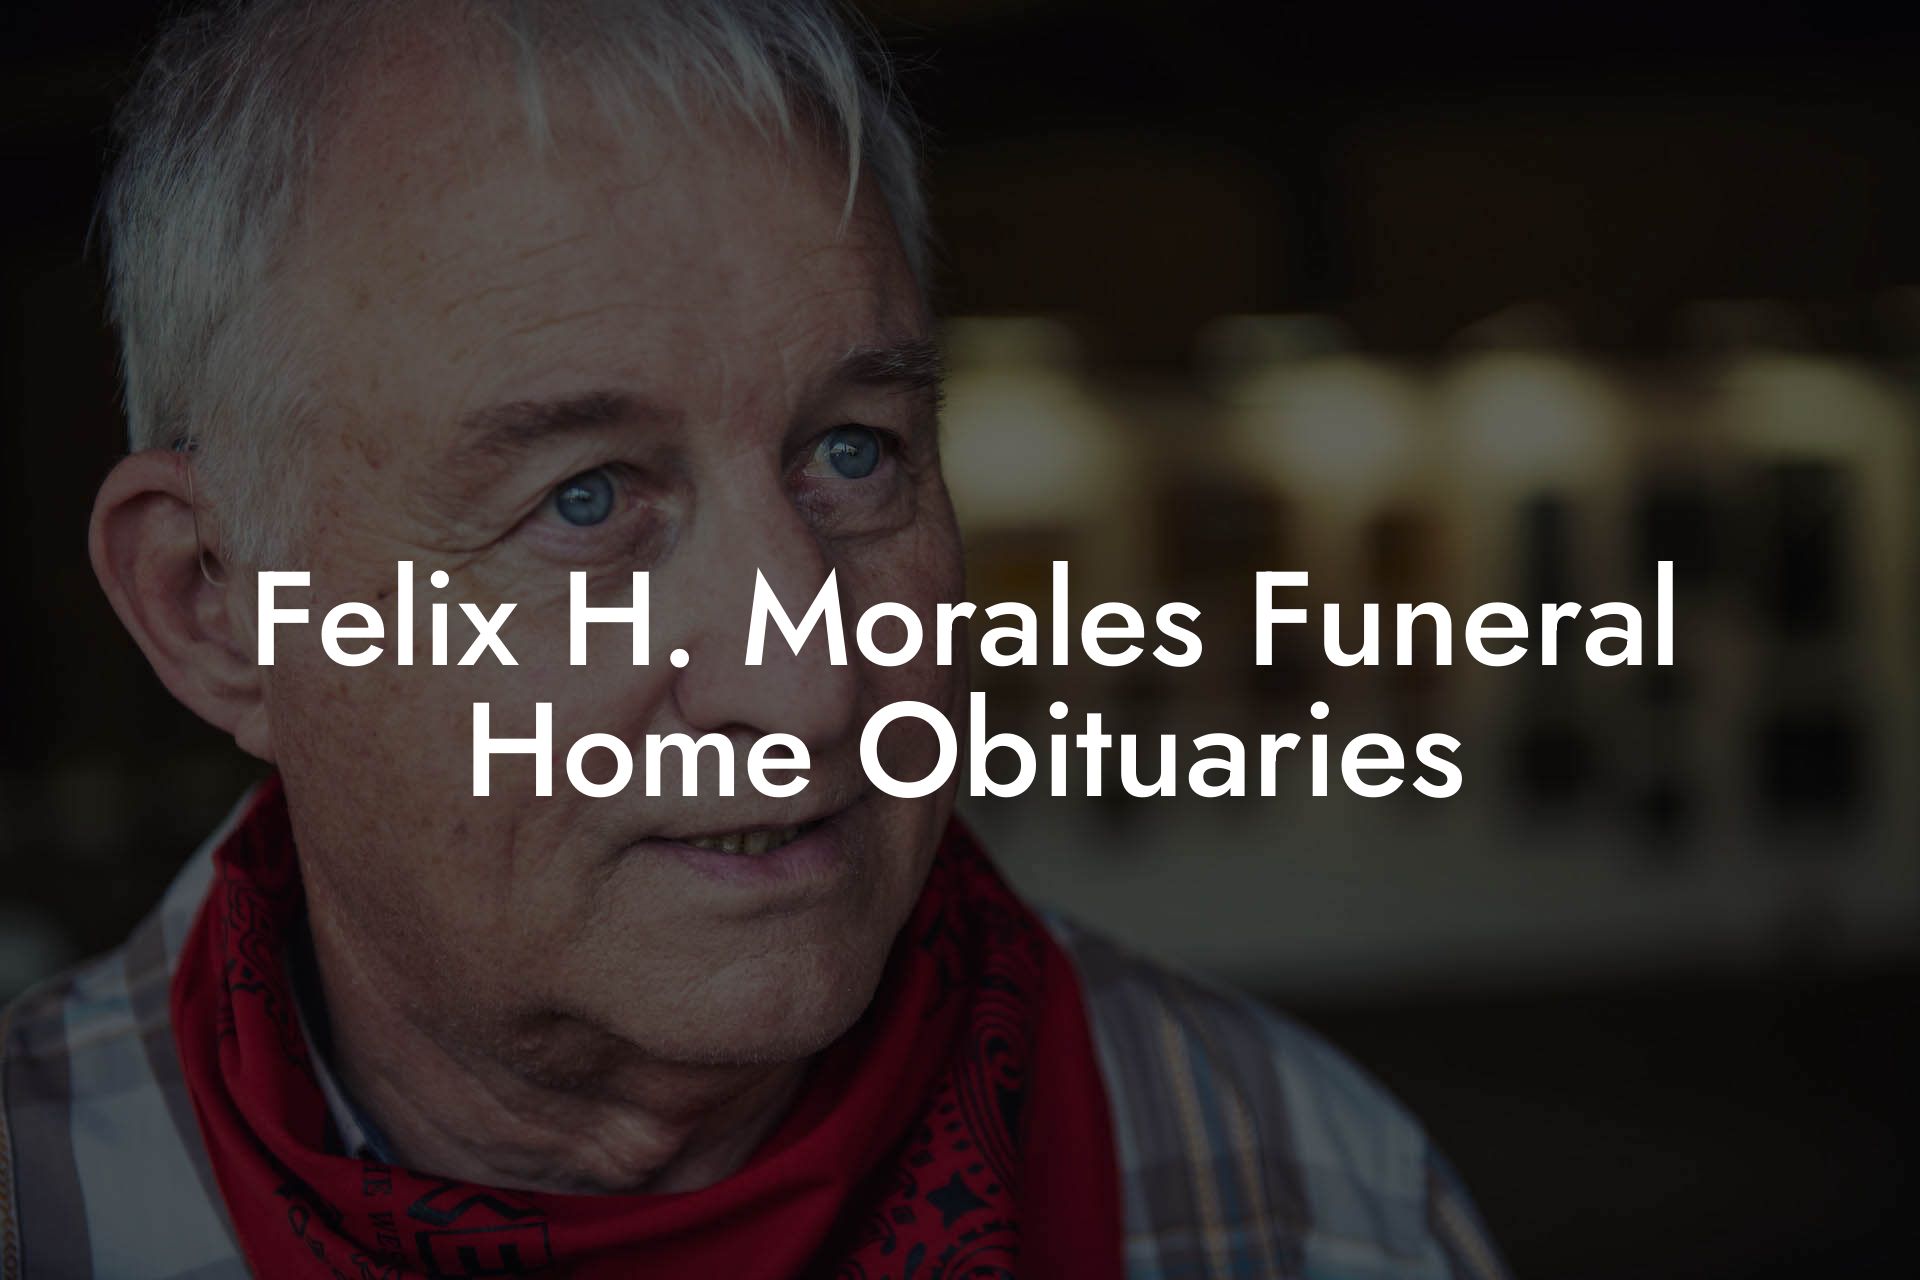 Felix H. Morales Funeral Home Obituaries